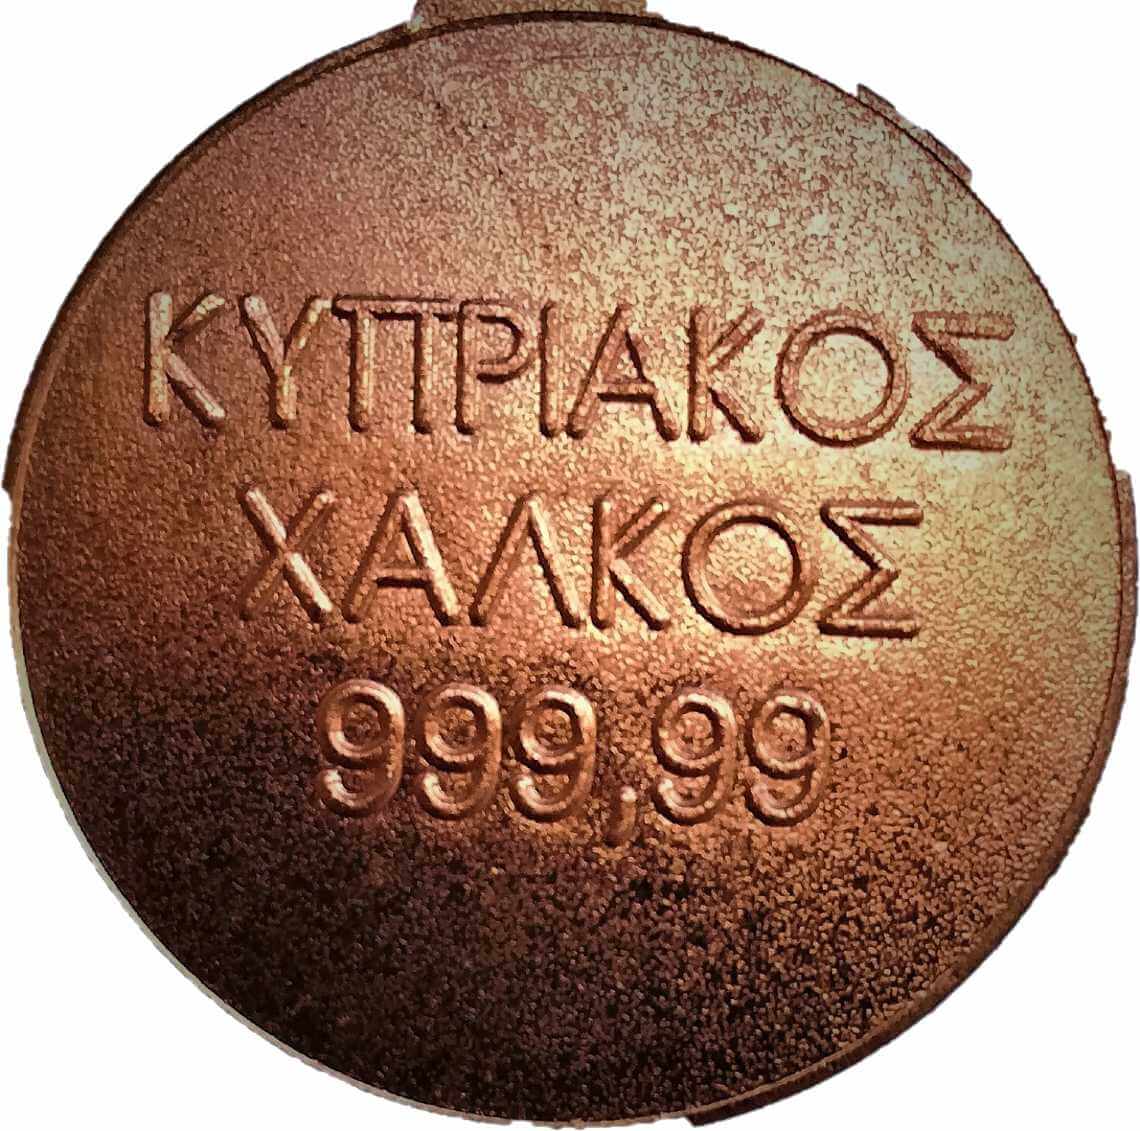 Μικρή πλάκα από κυπριακό χαλκό (αναμνηστικά δώρα από Σκουριώτισσα)